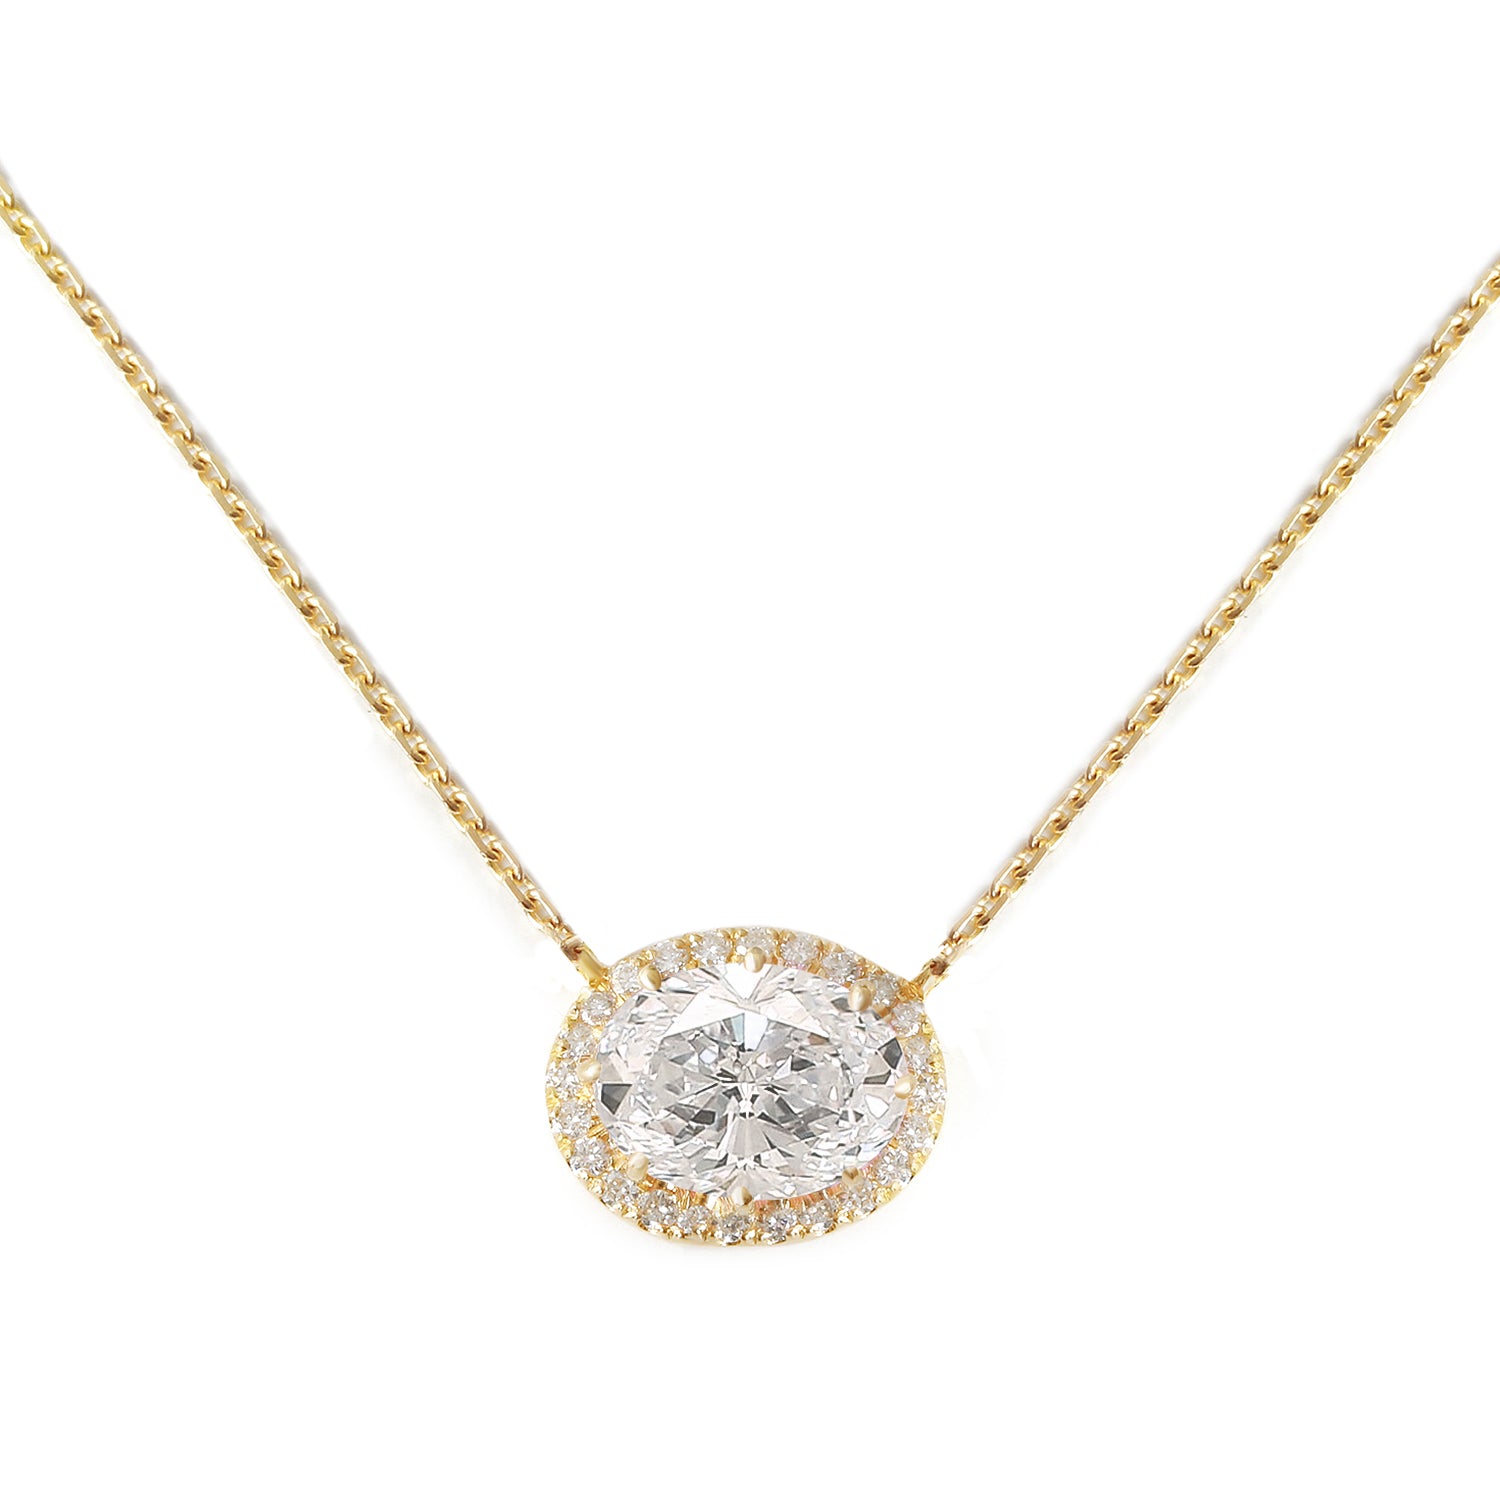 Oval Halo Diamond Pendant Necklace